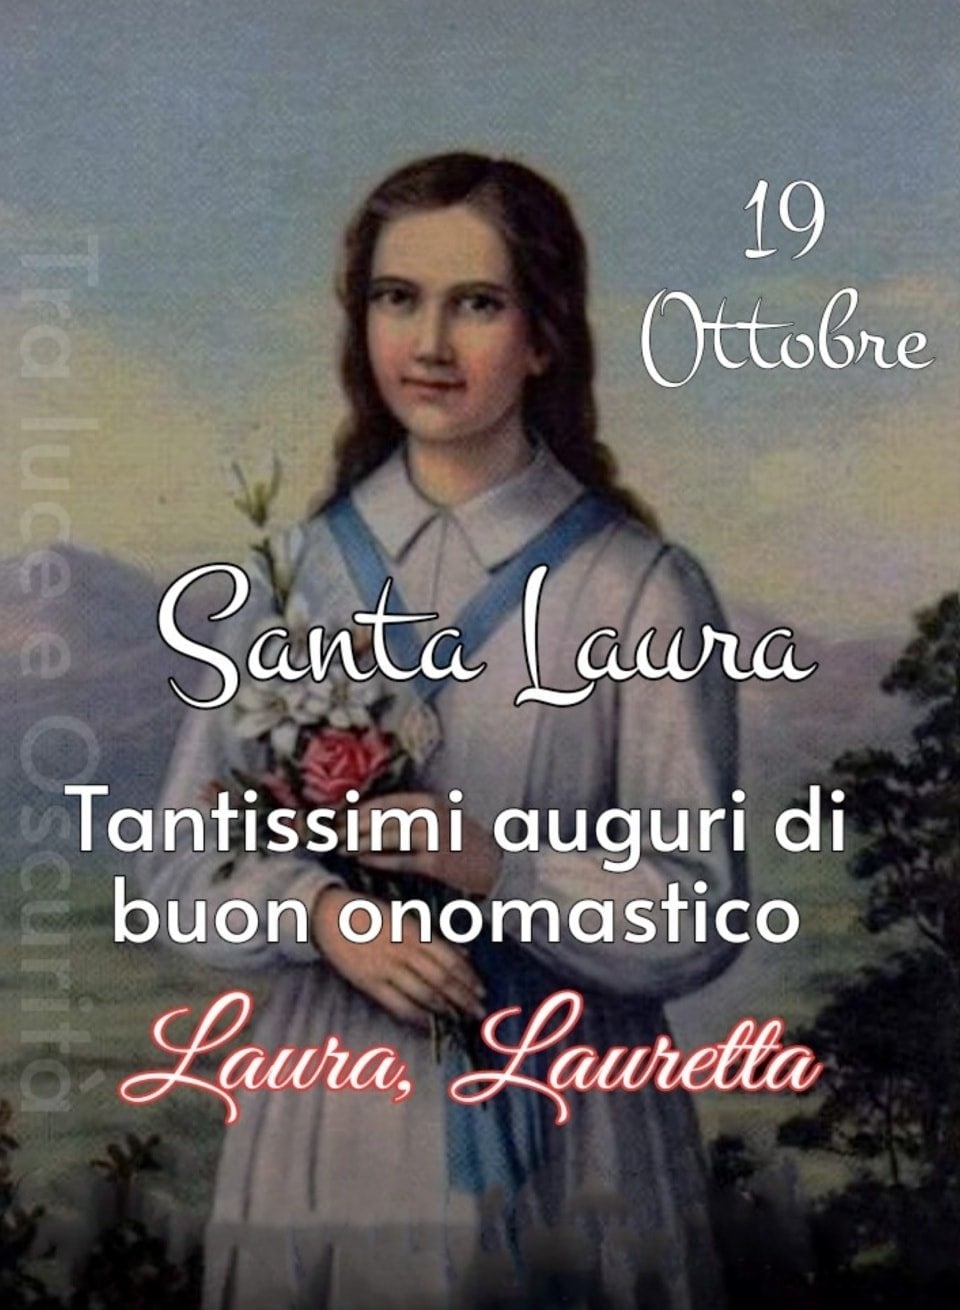 19 Ottobre. Santa Laura. Tantissimi auguri di buon onomastico Laura, Lauretta.